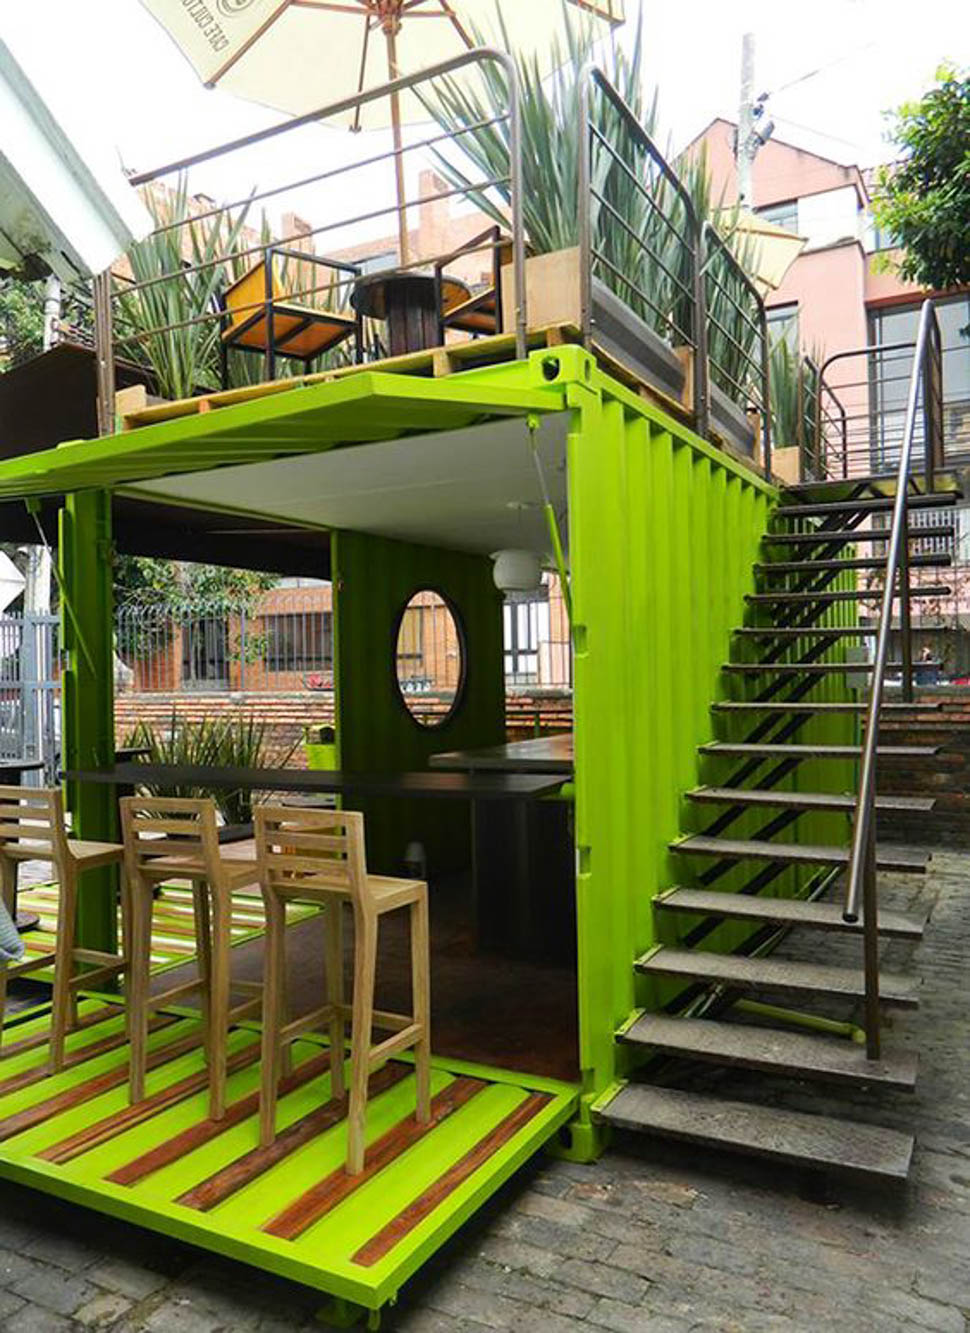 Ý tưởng thiết kế quán cafe container ngập tràn cây cảnh xanh mát